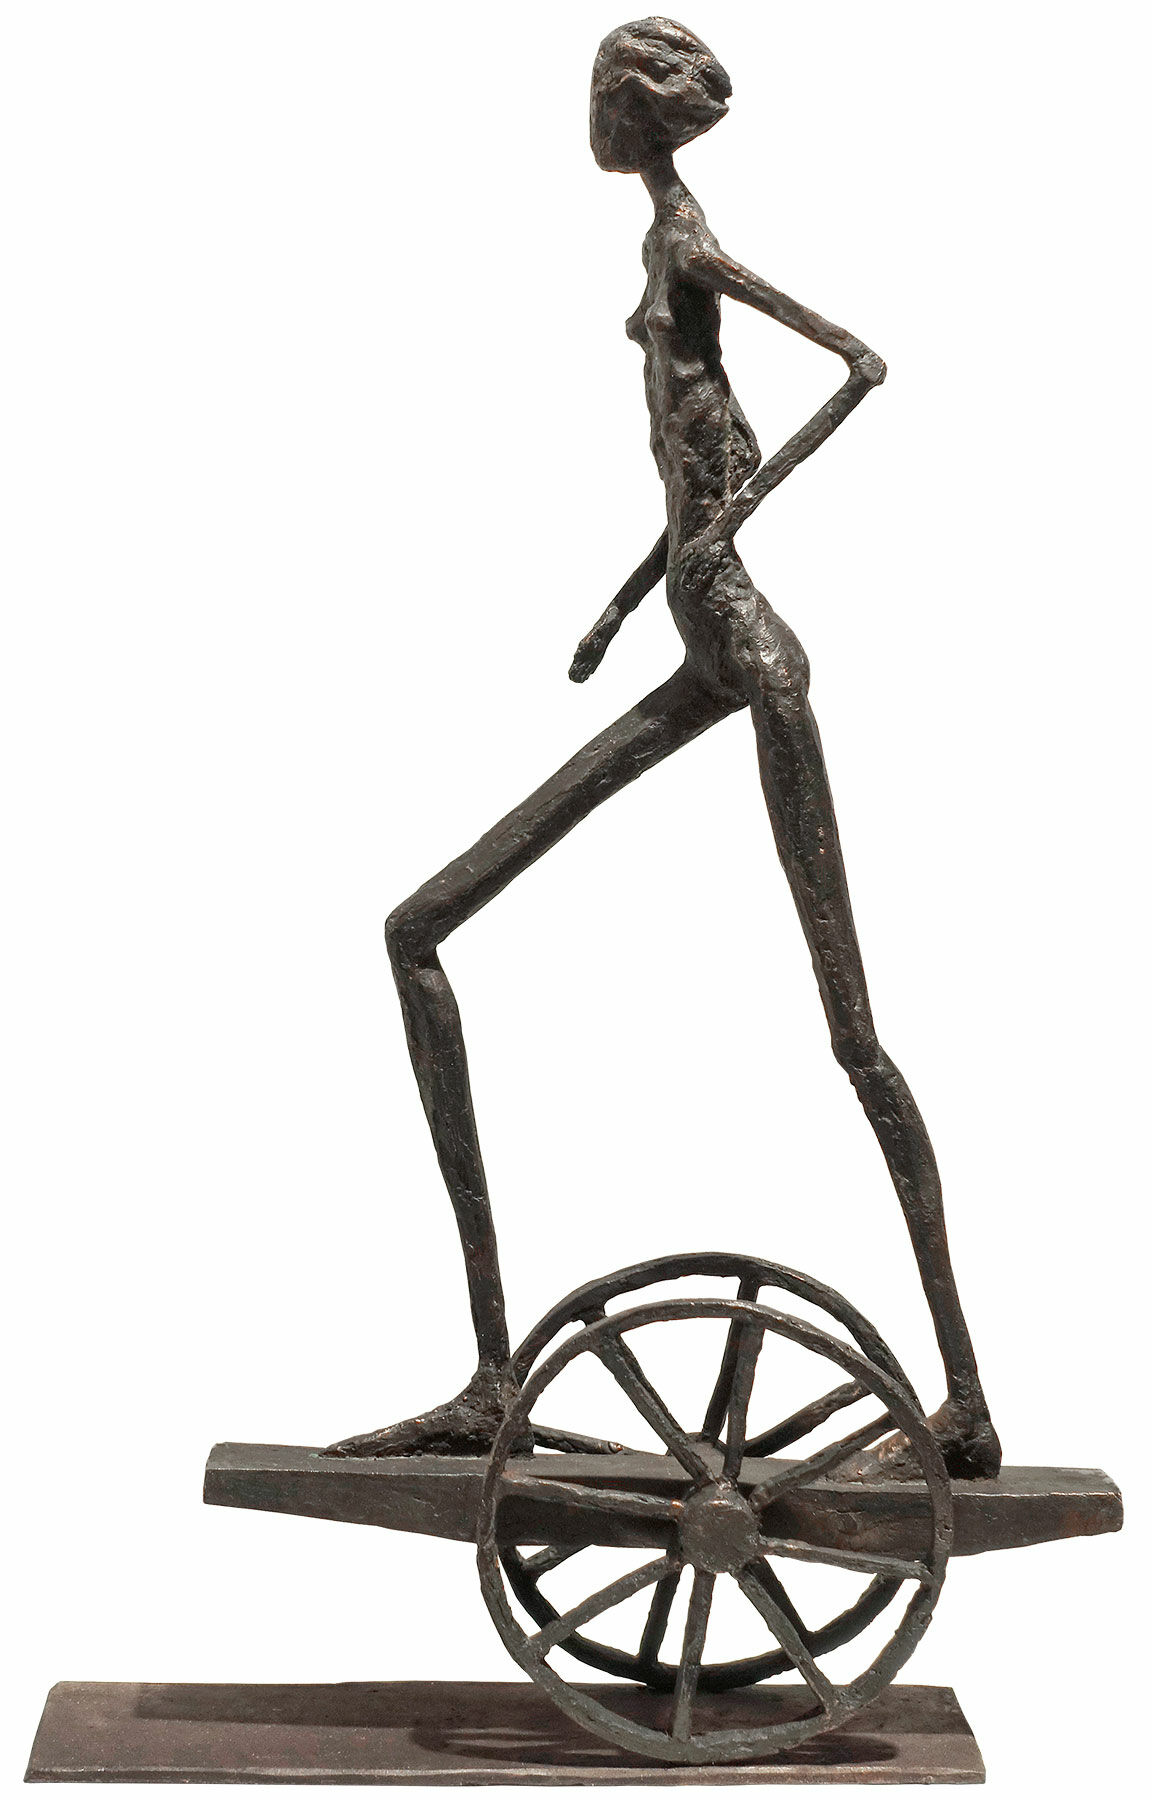 Sculpture "Rush" (2018), bronze by Sibylle Waldhausen